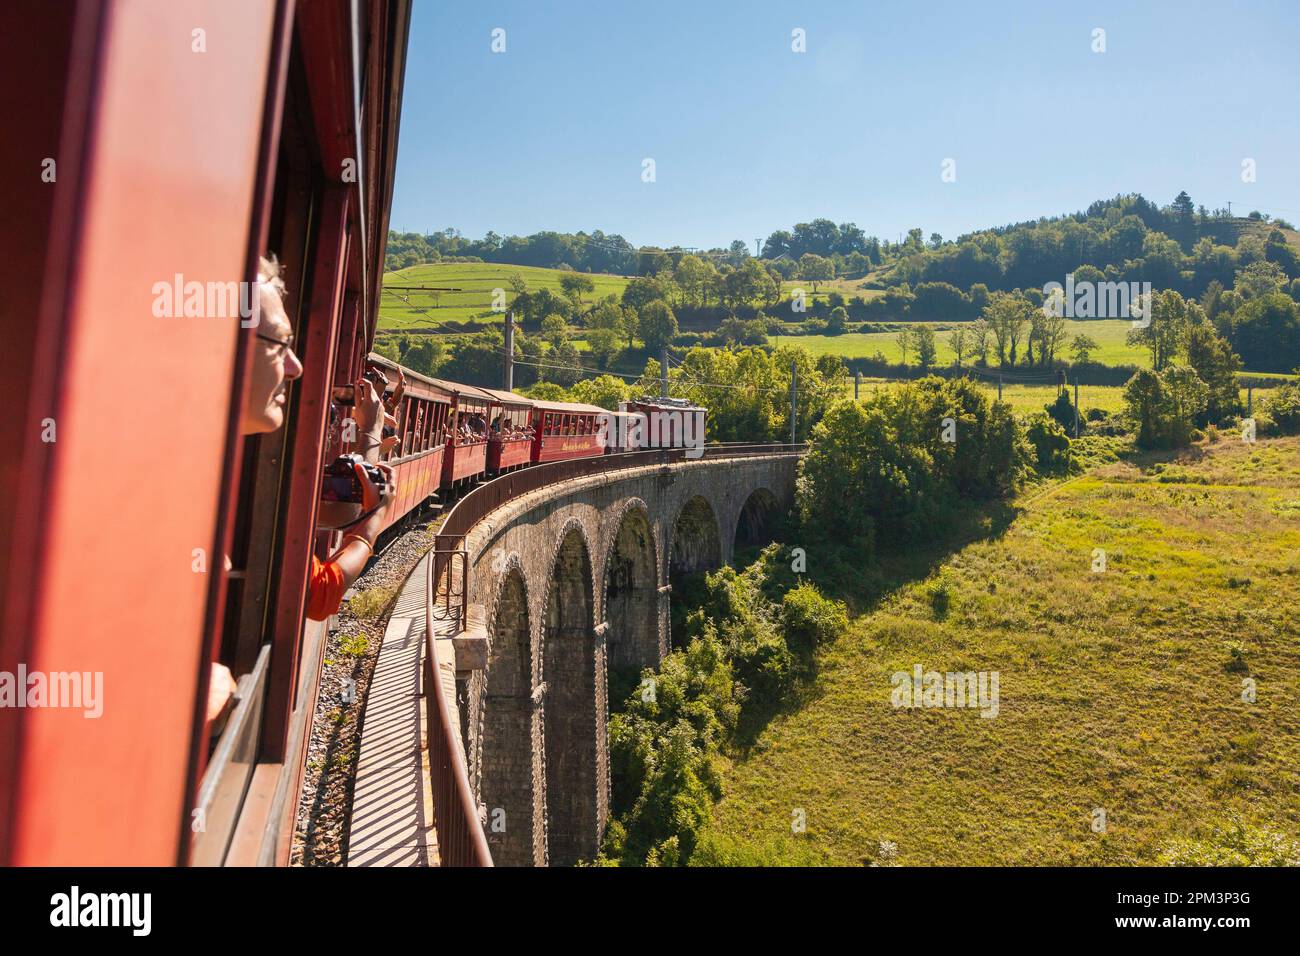 Frankreich, Isere, Matheysine, Le Petit Train de la Mure, Touristenbahn in Isère, für eine Reise zwischen Seen und Bergen am Fuße der Alpen Stockfoto